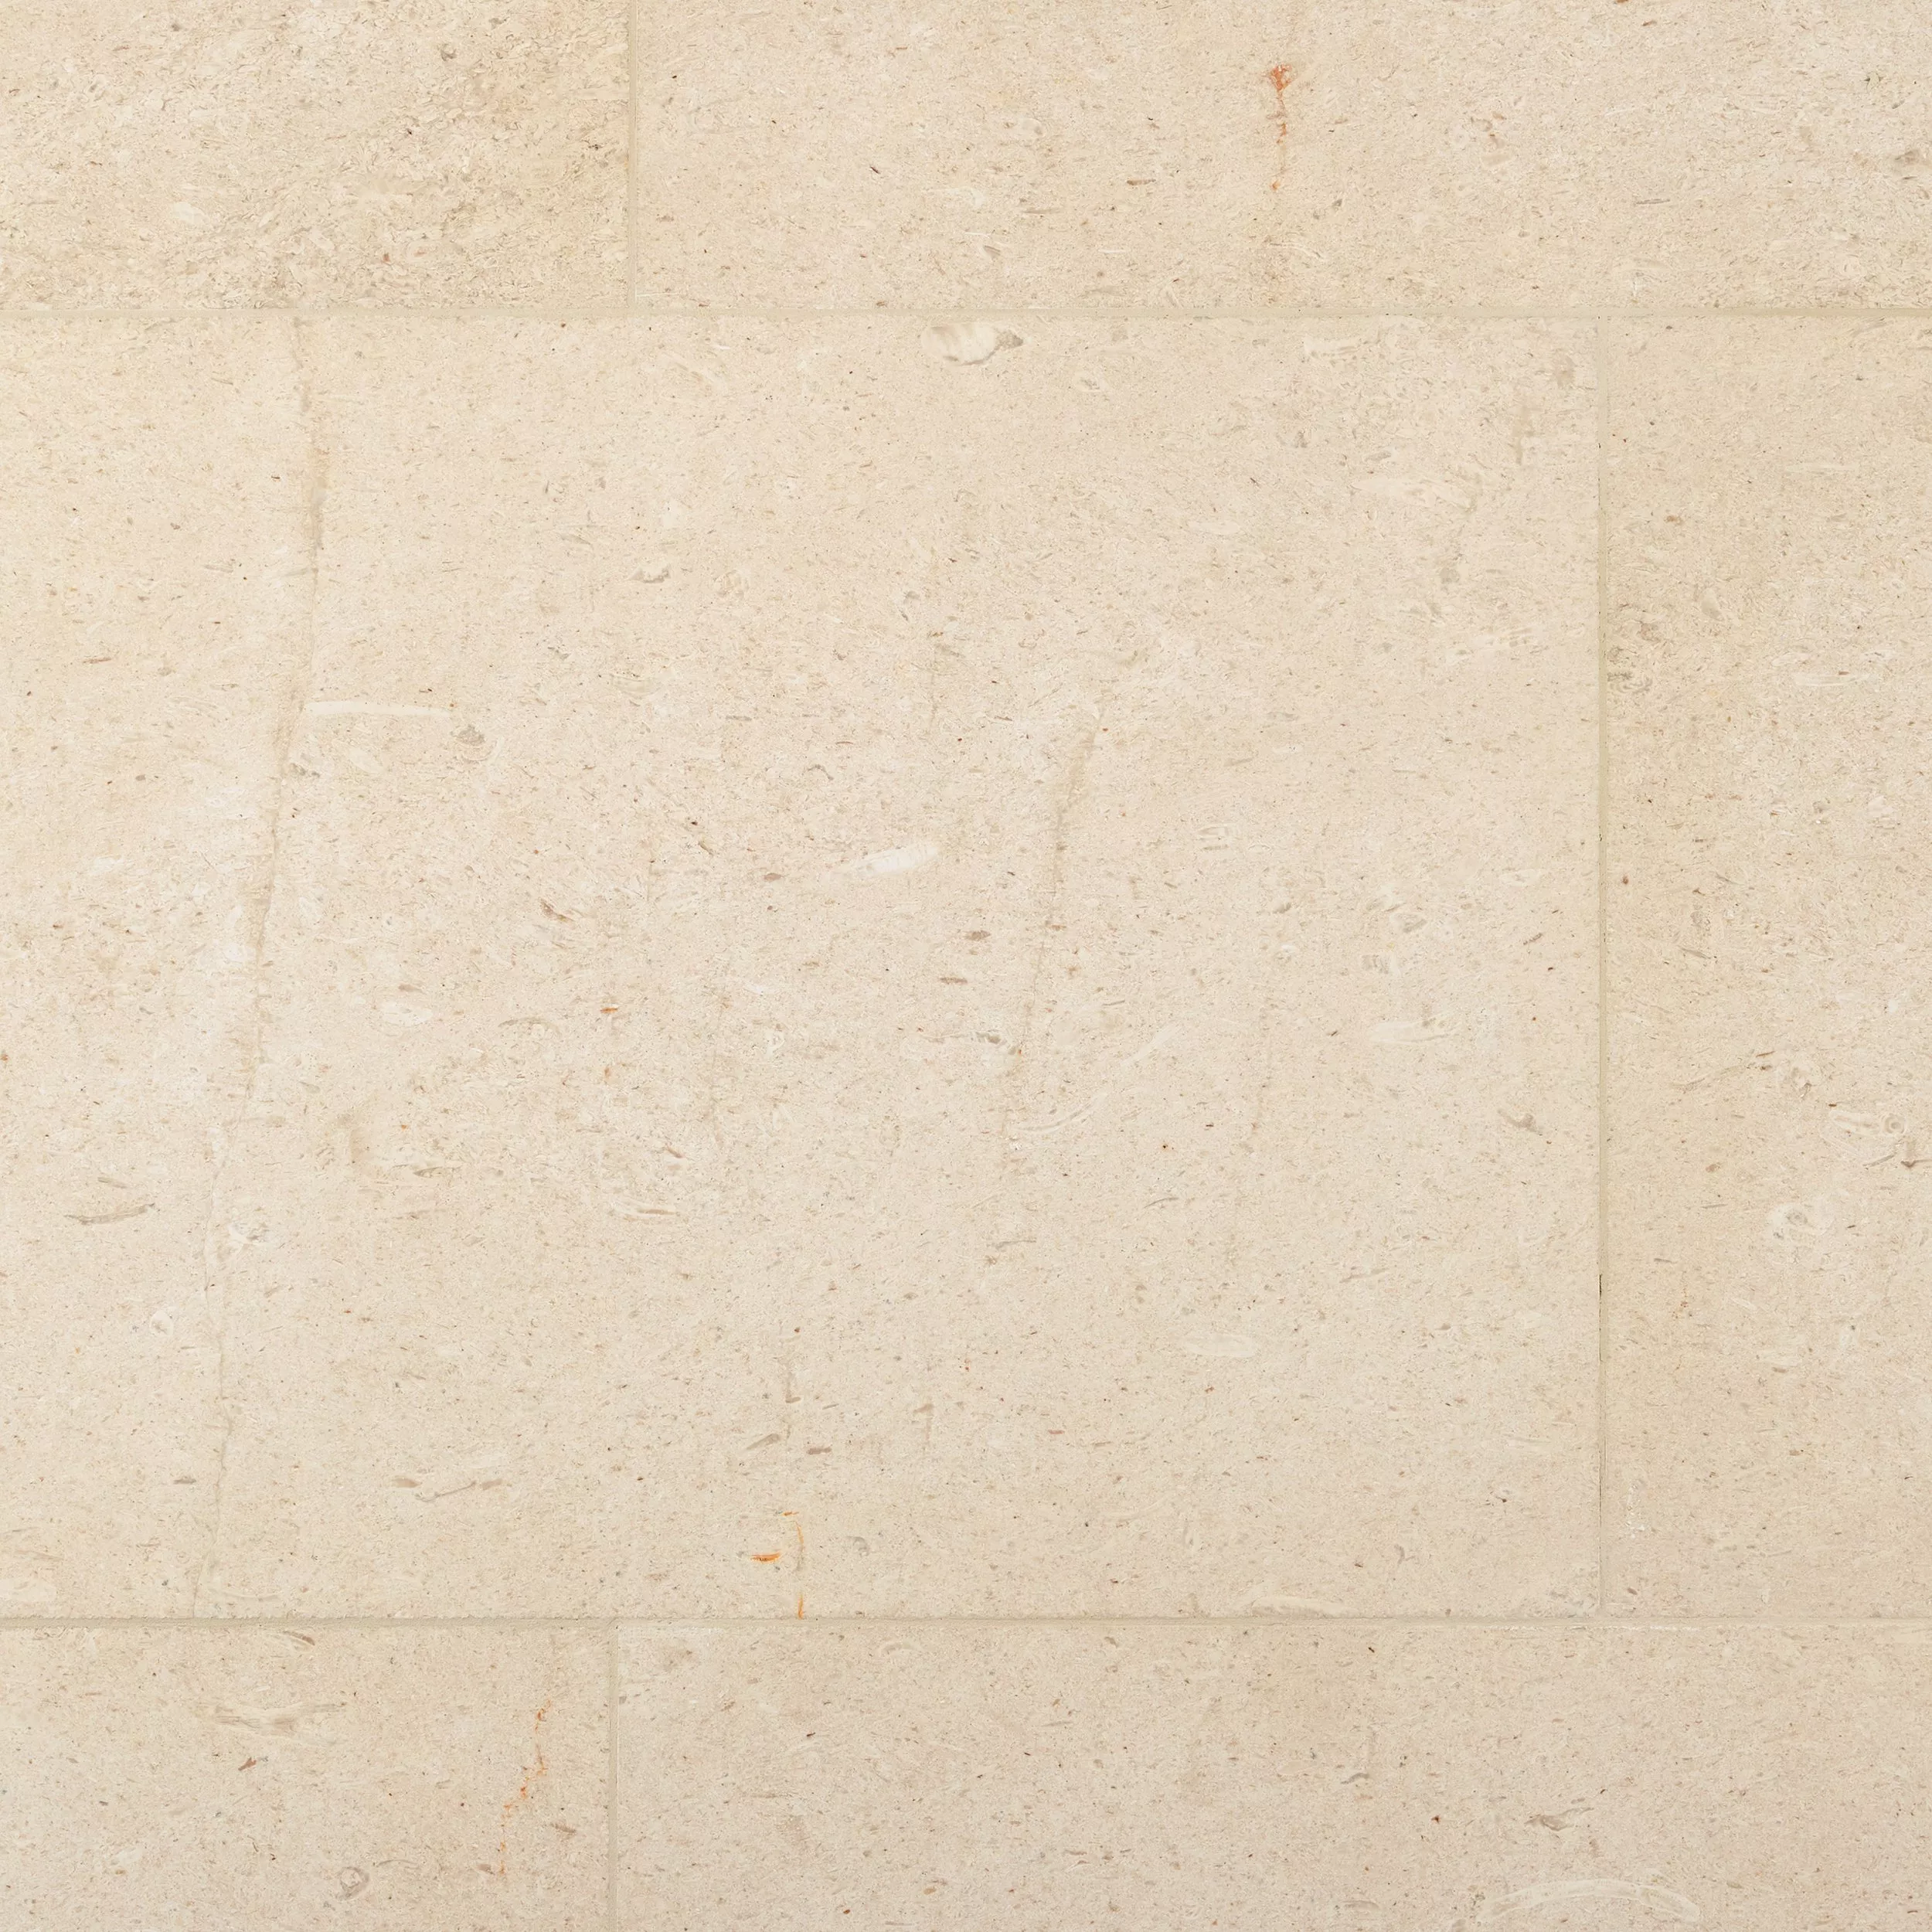 Marsella Honed Limestone Tile